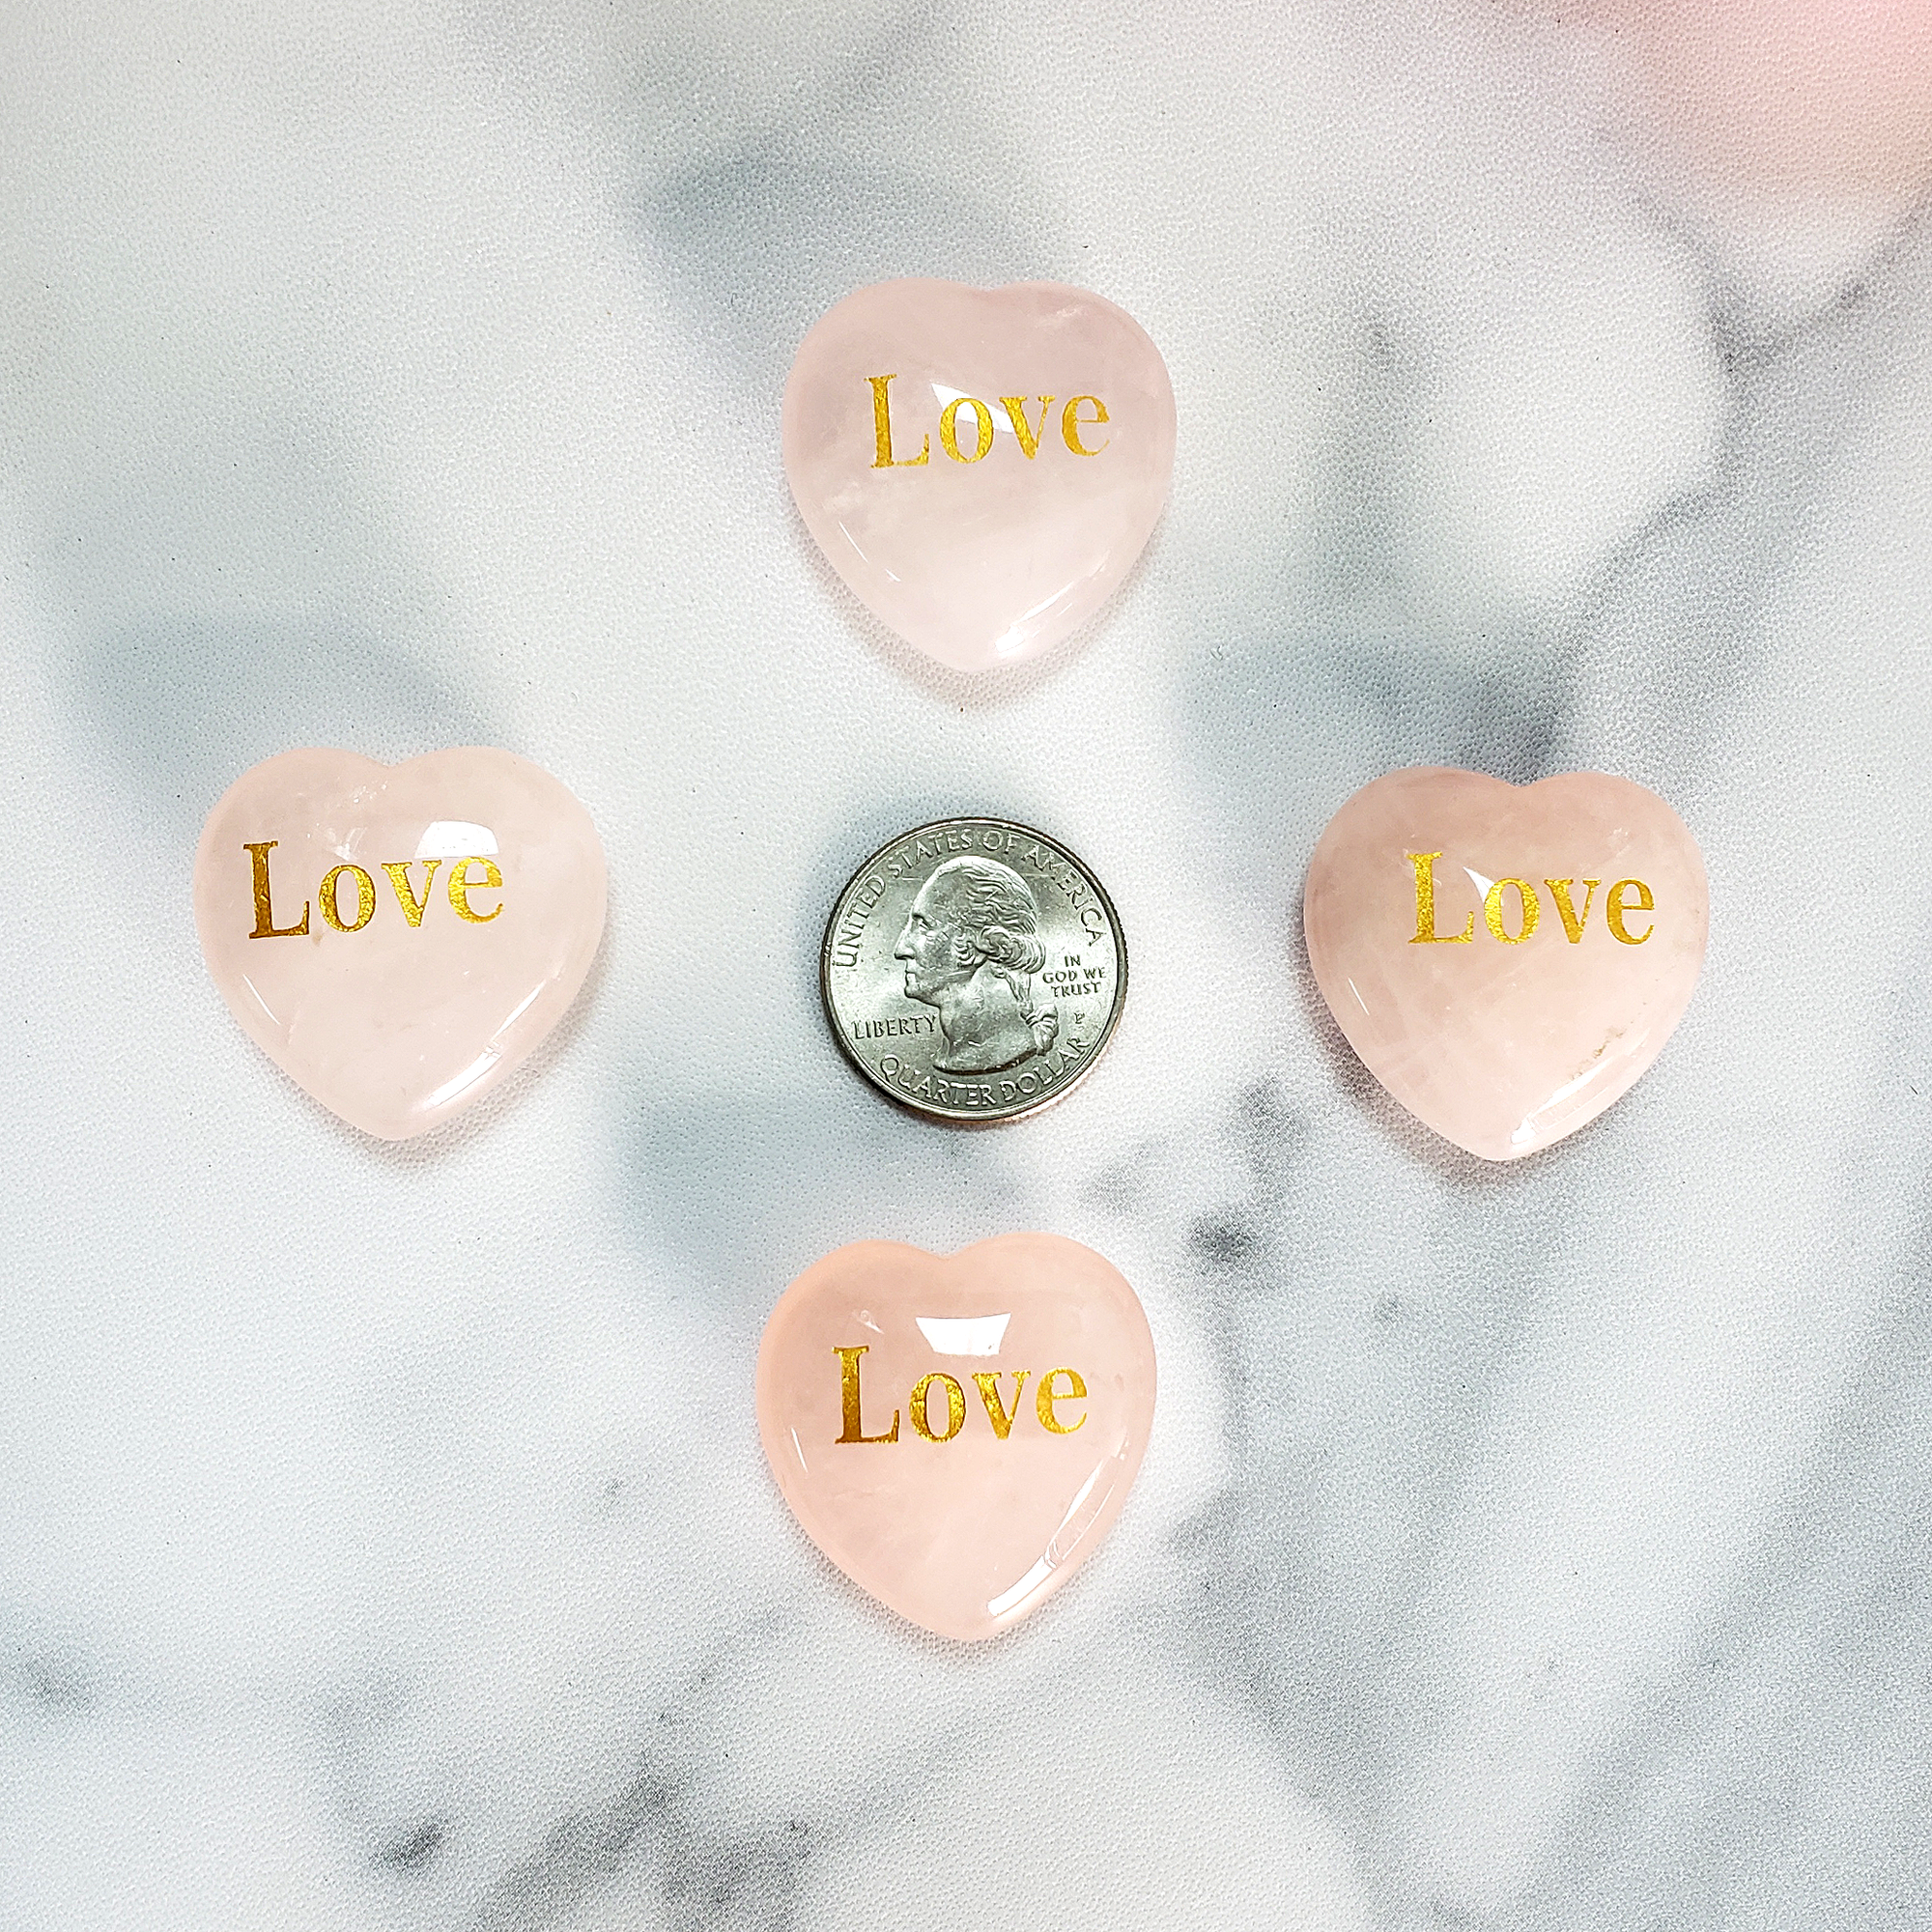 Rose Quartz Crystal Natural Gemstone Heart Carving | Engraved Love Affirmation - Size Comparison